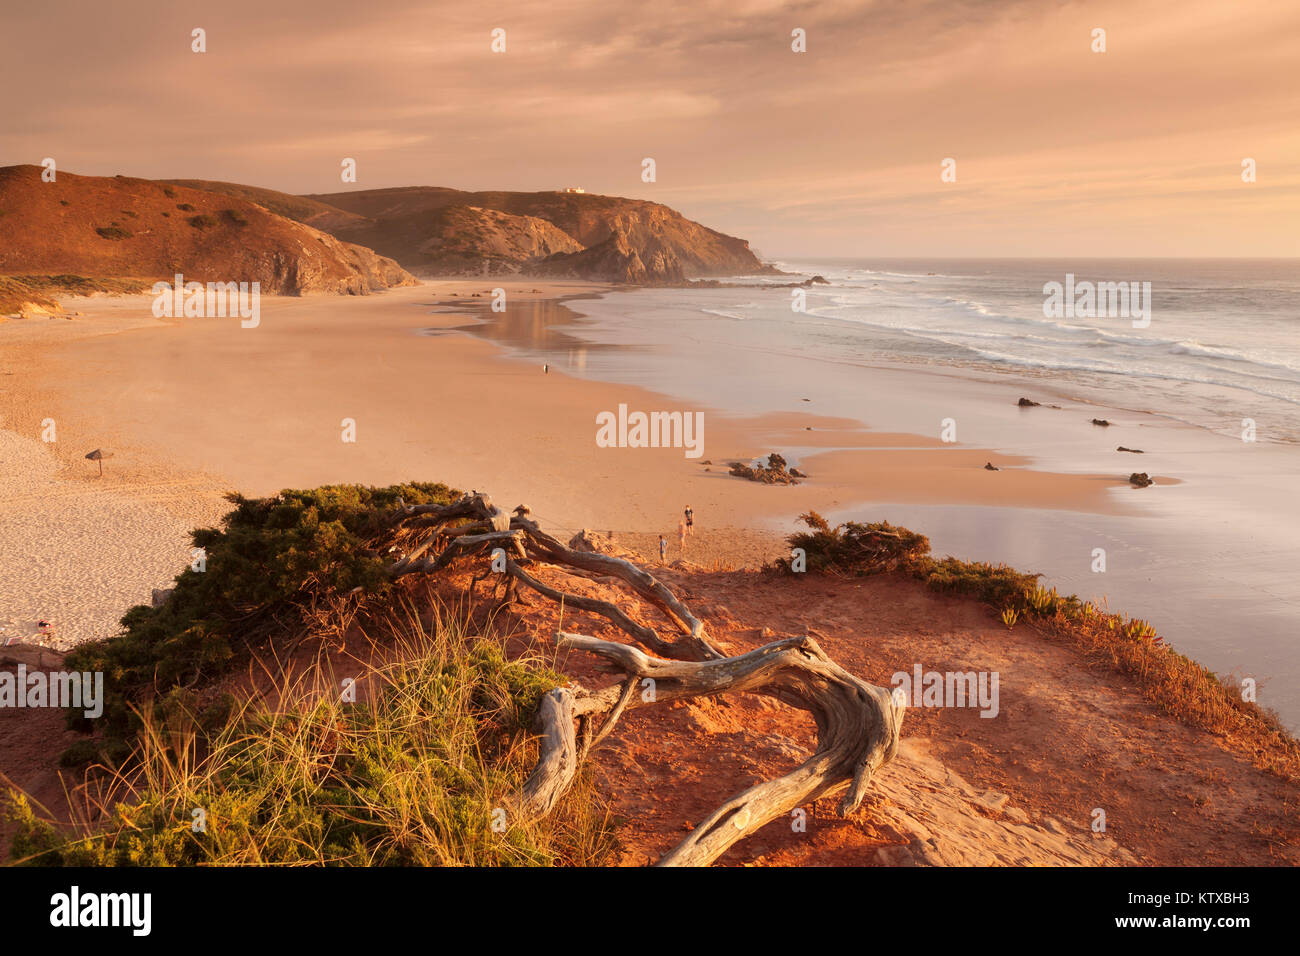 Praia do Amado spiaggia al tramonto, Carrapateira, Costa Vicentina, west coast, Algarve, Portogallo, Europa Foto Stock